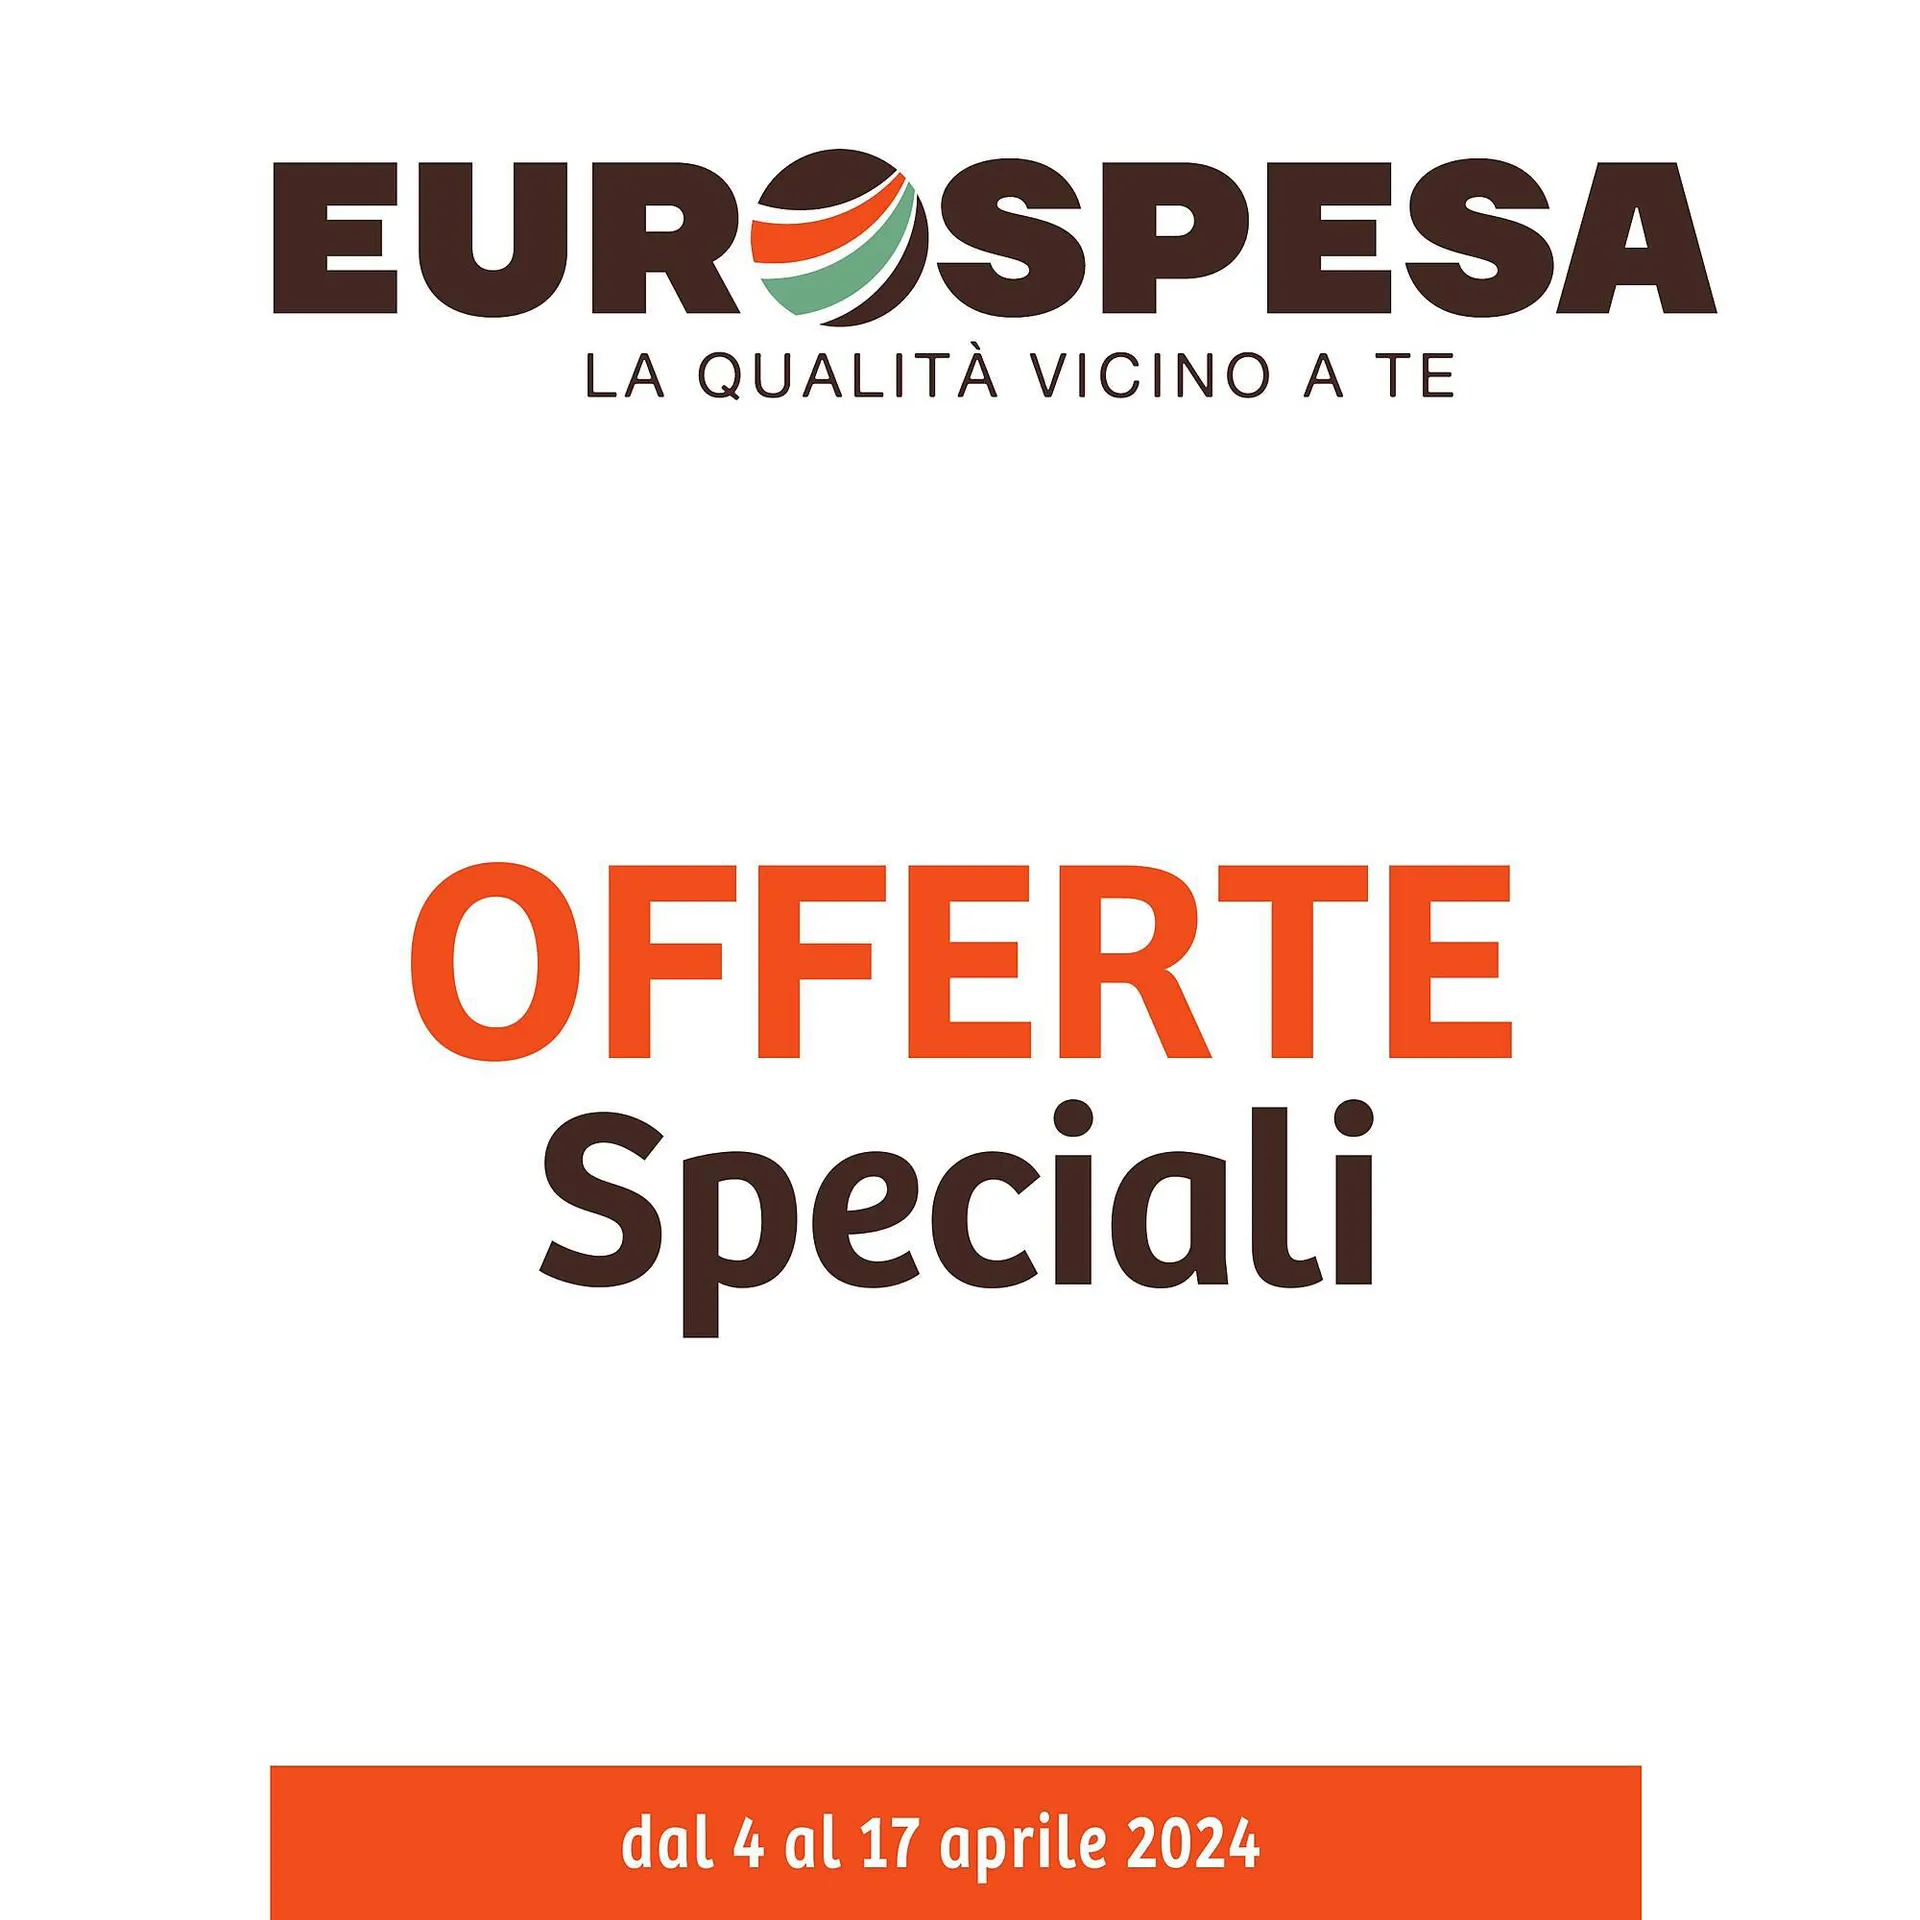 Volantino Eurospesa da 4 aprile a 17 aprile di 2024 - Pagina del volantino 1